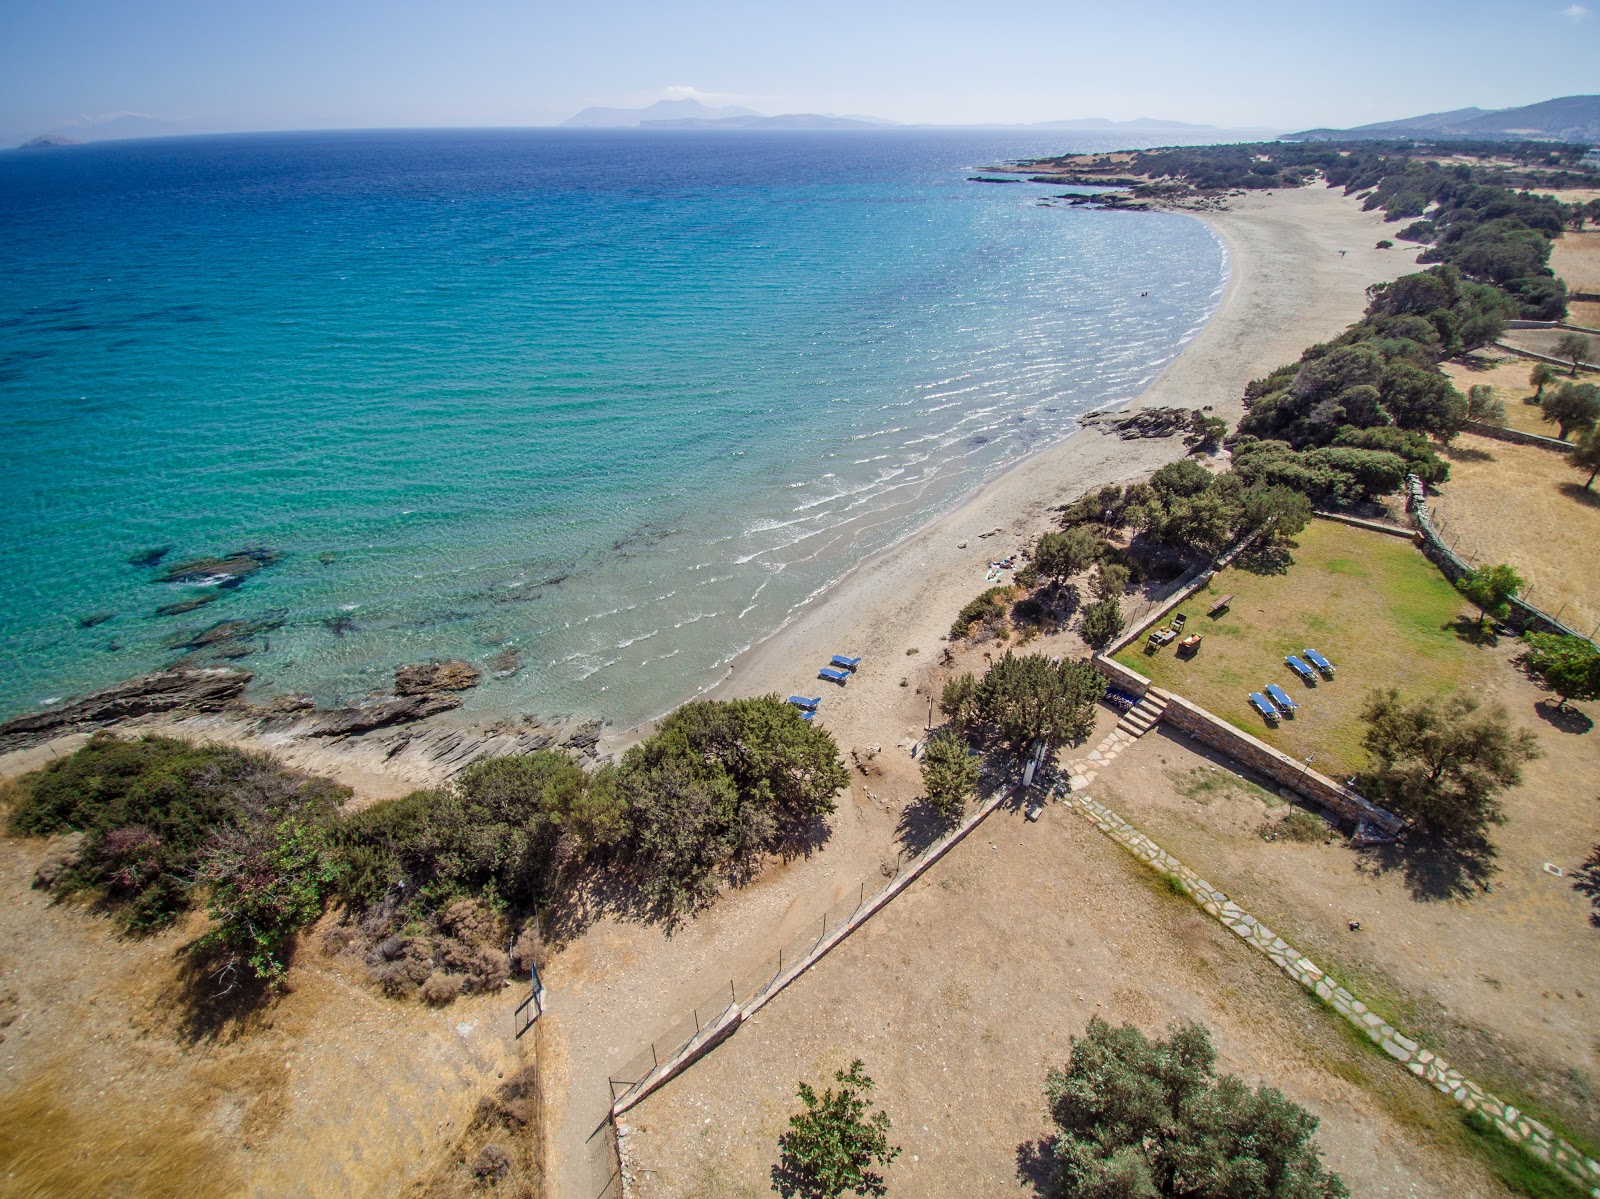 Psili Ammos Plajı'in fotoğrafı parlak ince kum yüzey ile